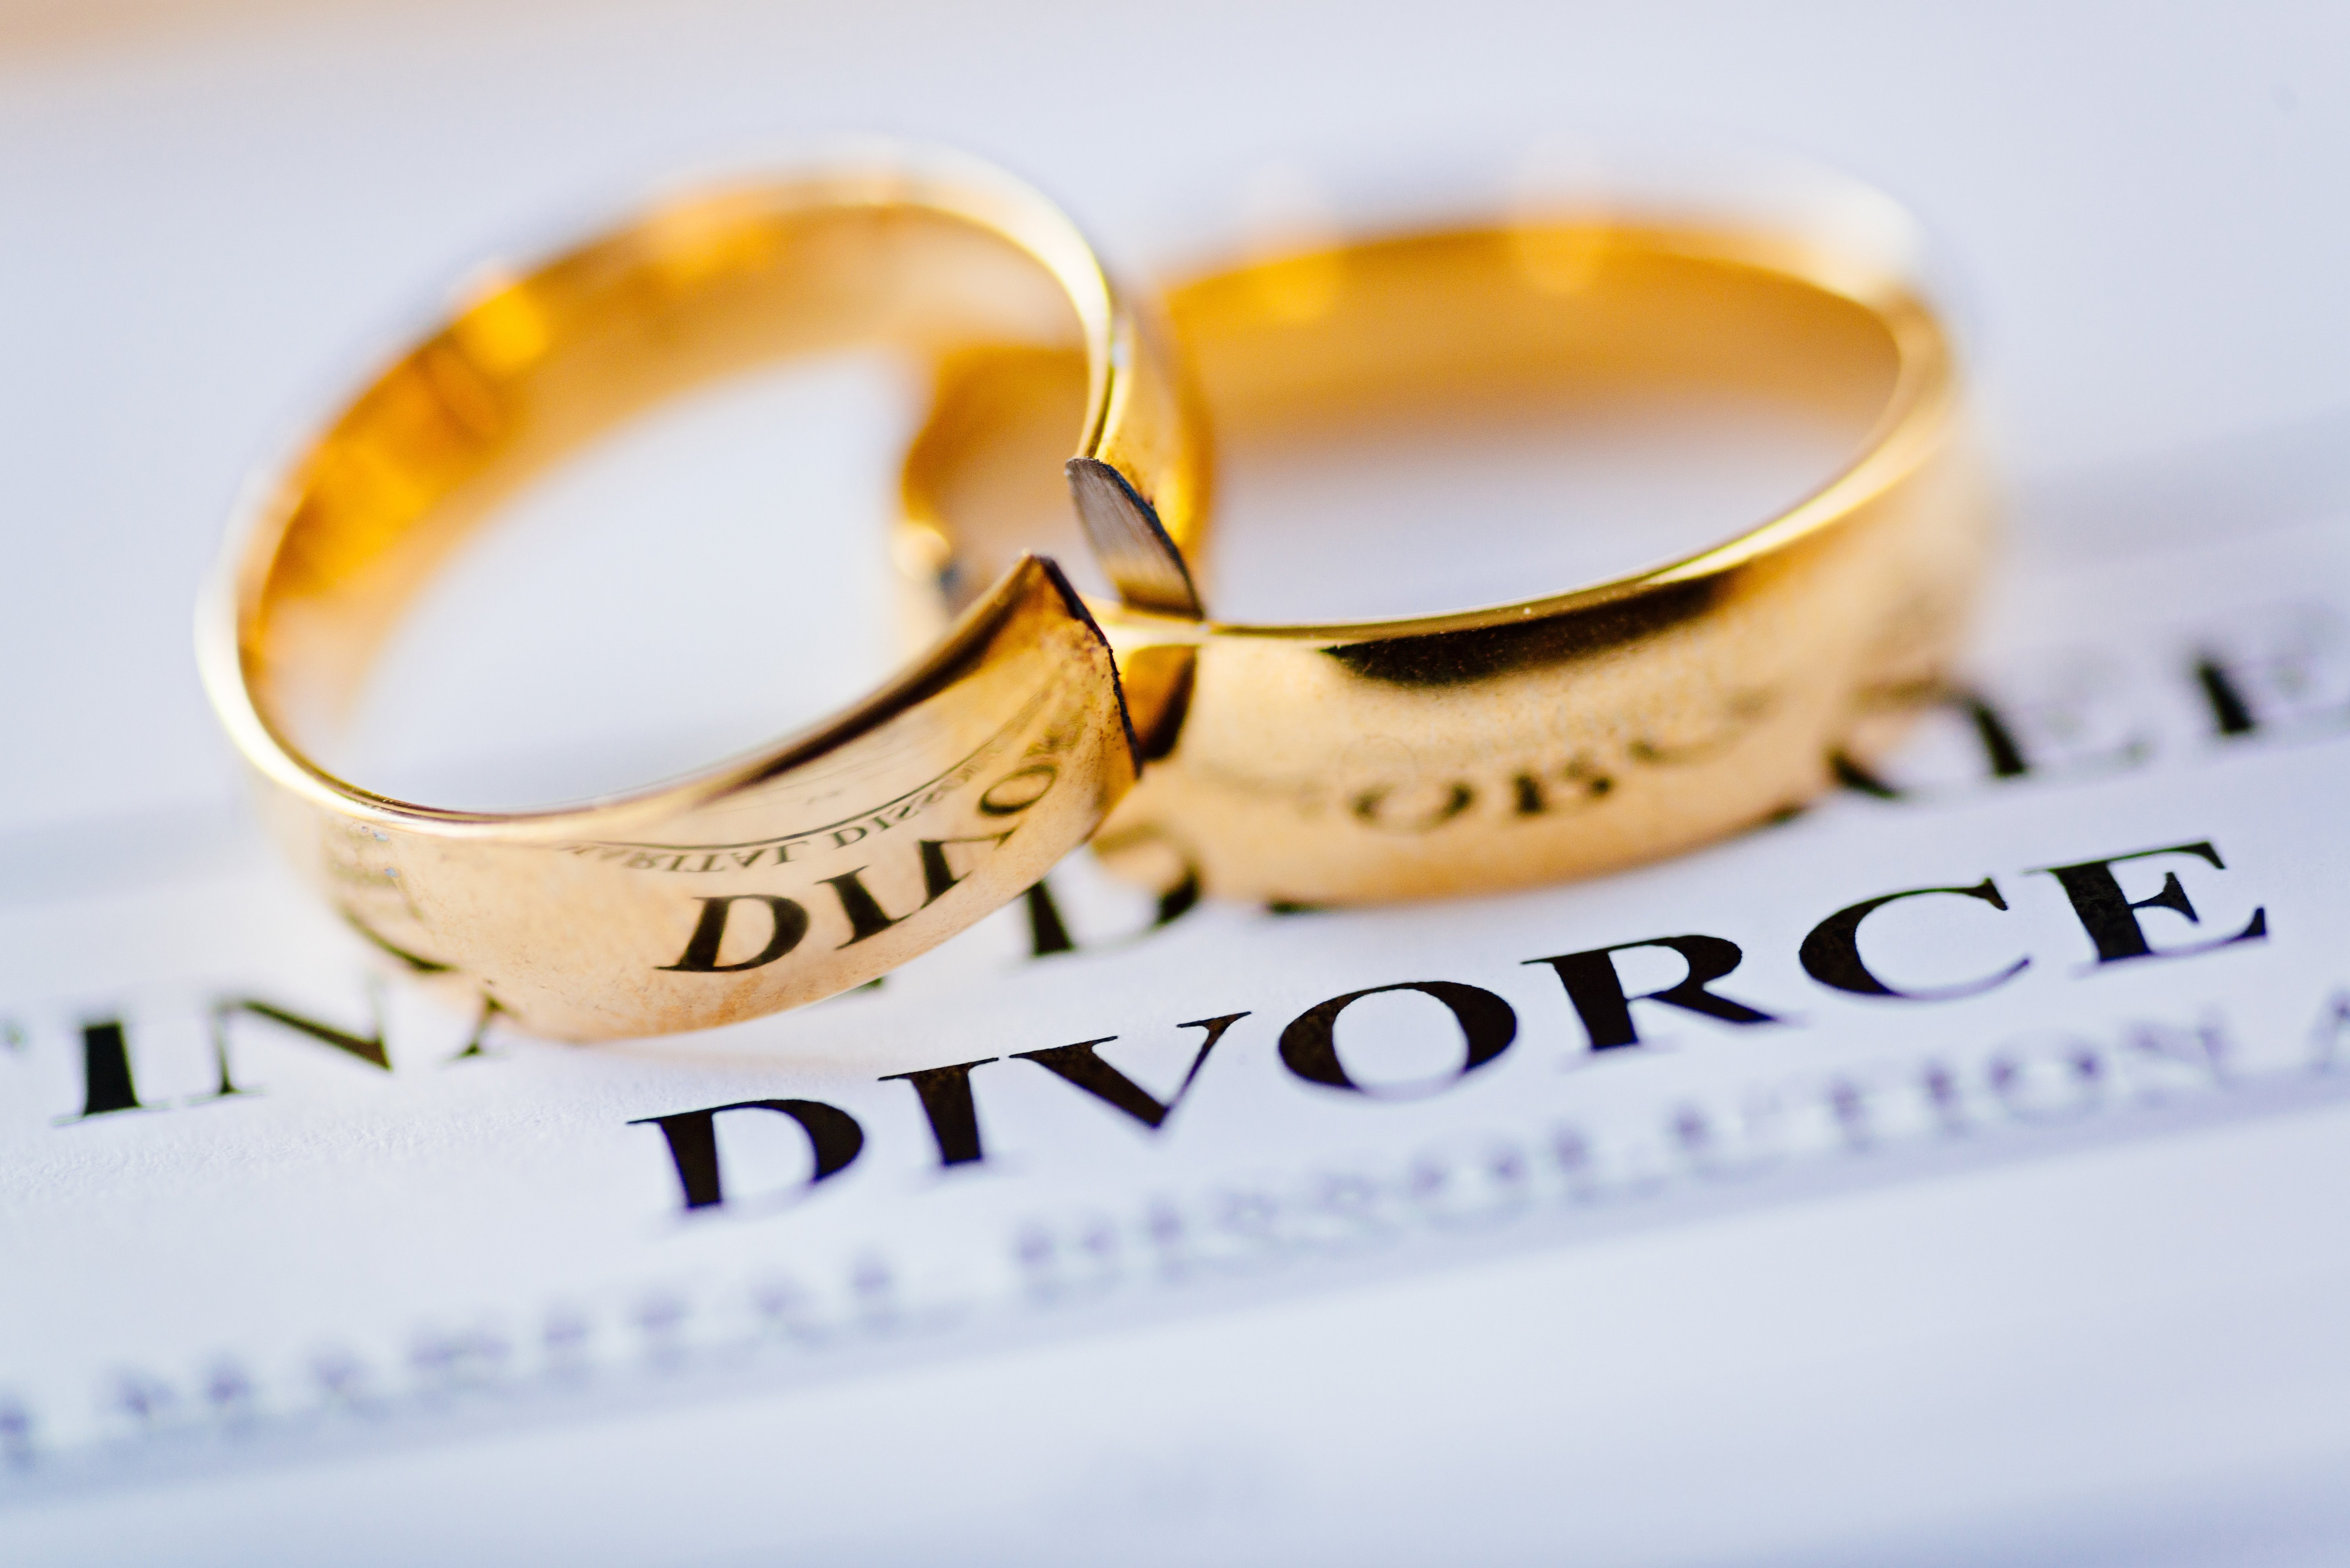 beokwn wedding rings and divorce papers